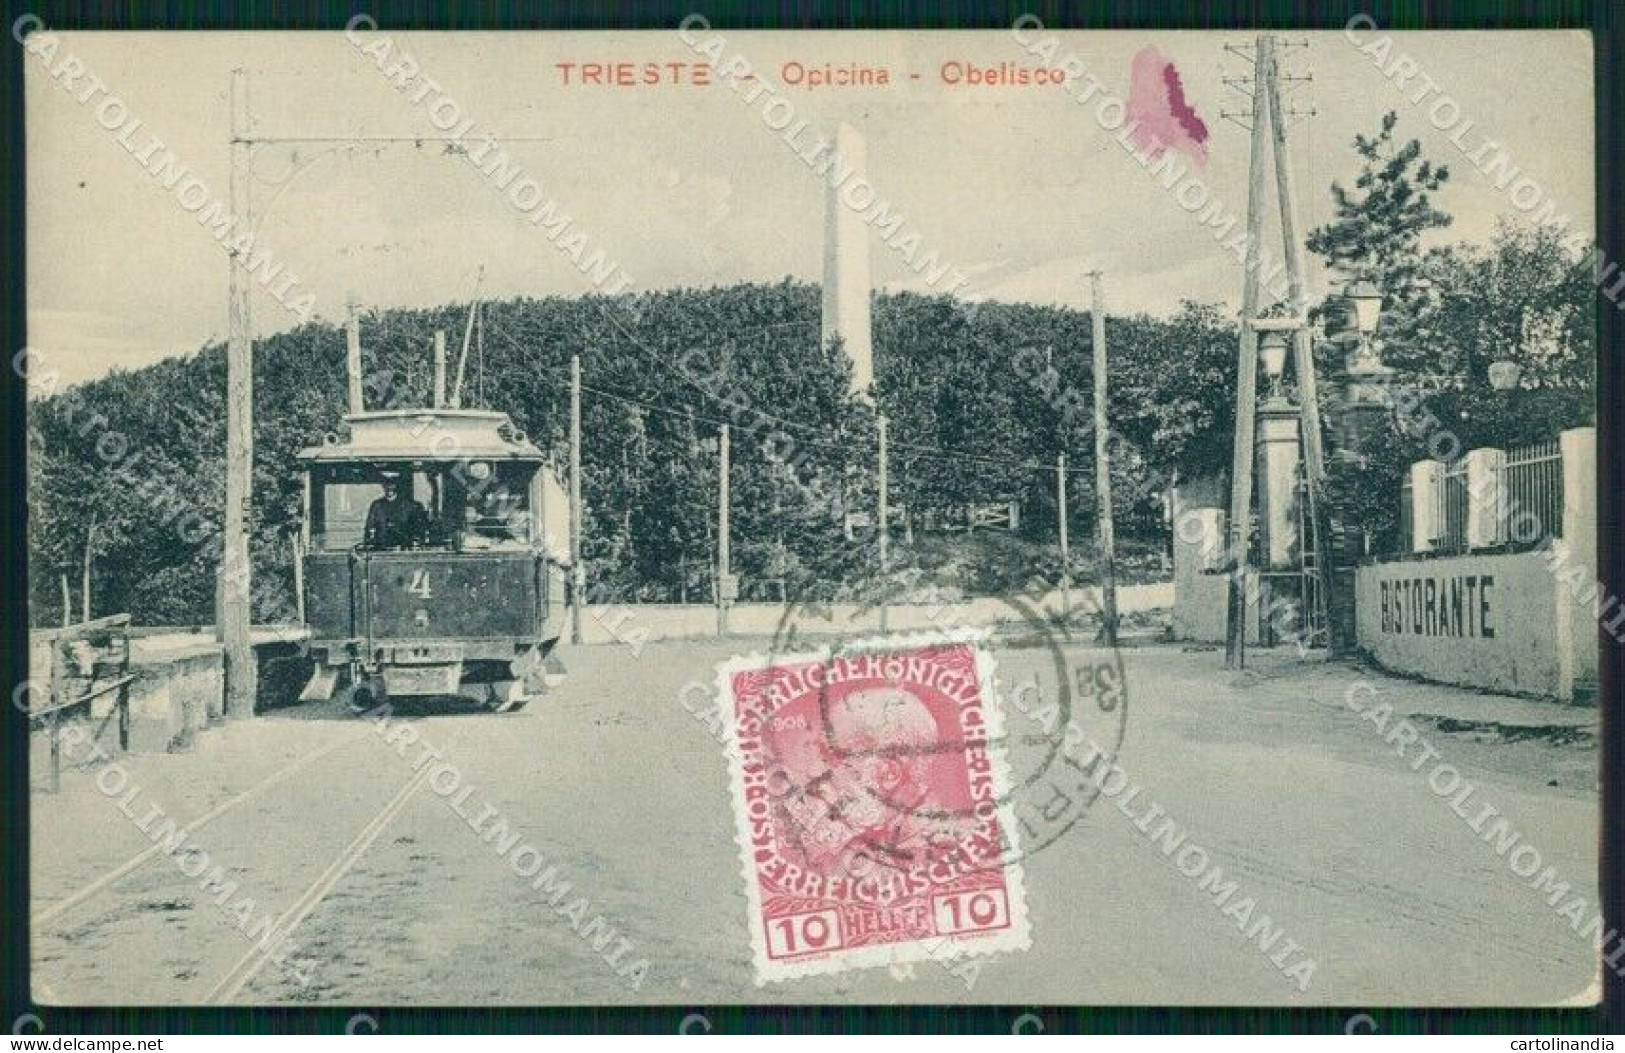 Trieste Opicina Obelisco Tram Cartolina MT1385 - Trieste